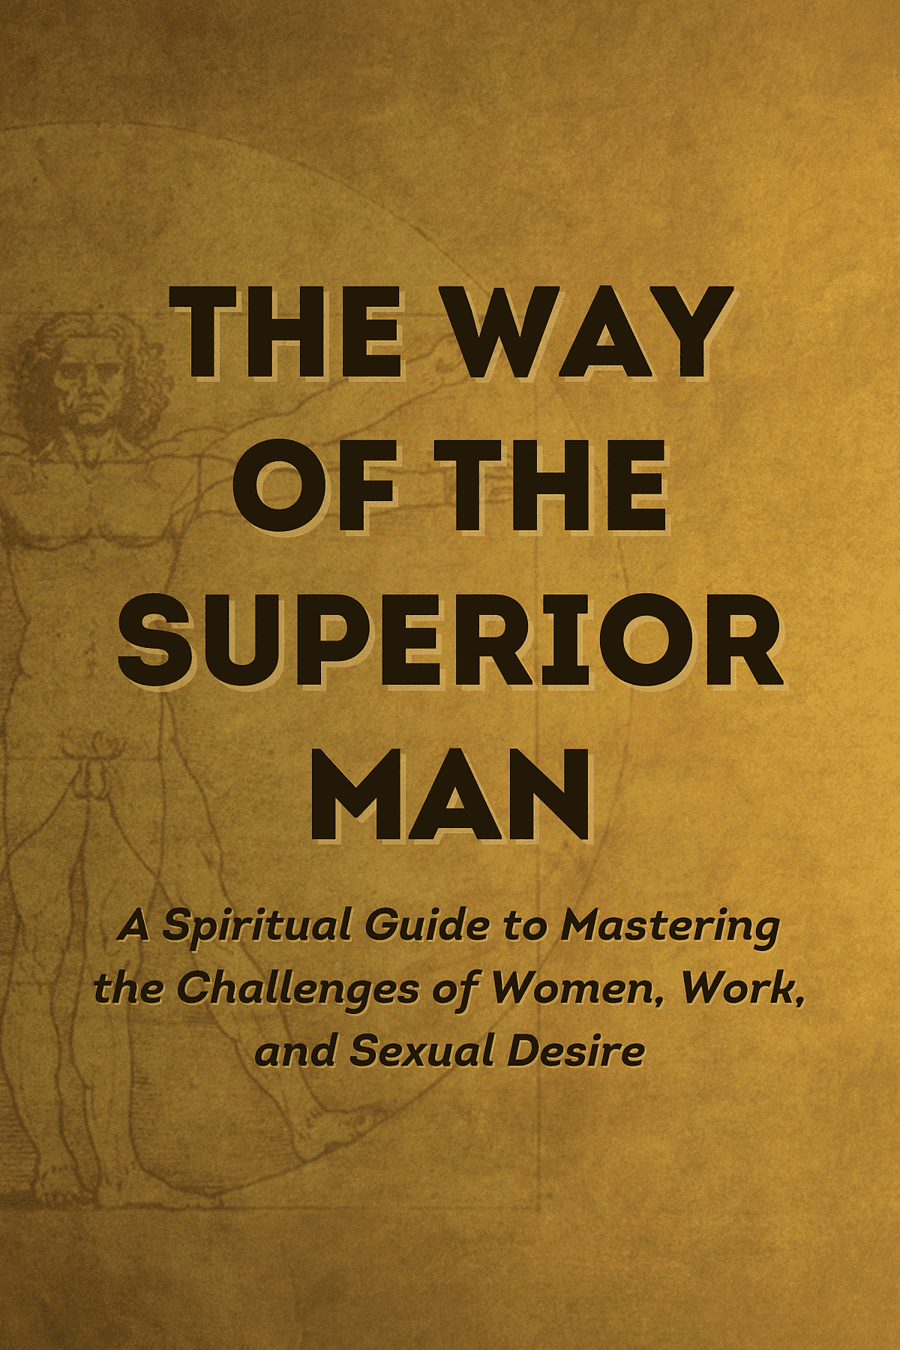 The Way of the Superior Man by David Deida - Book Summary